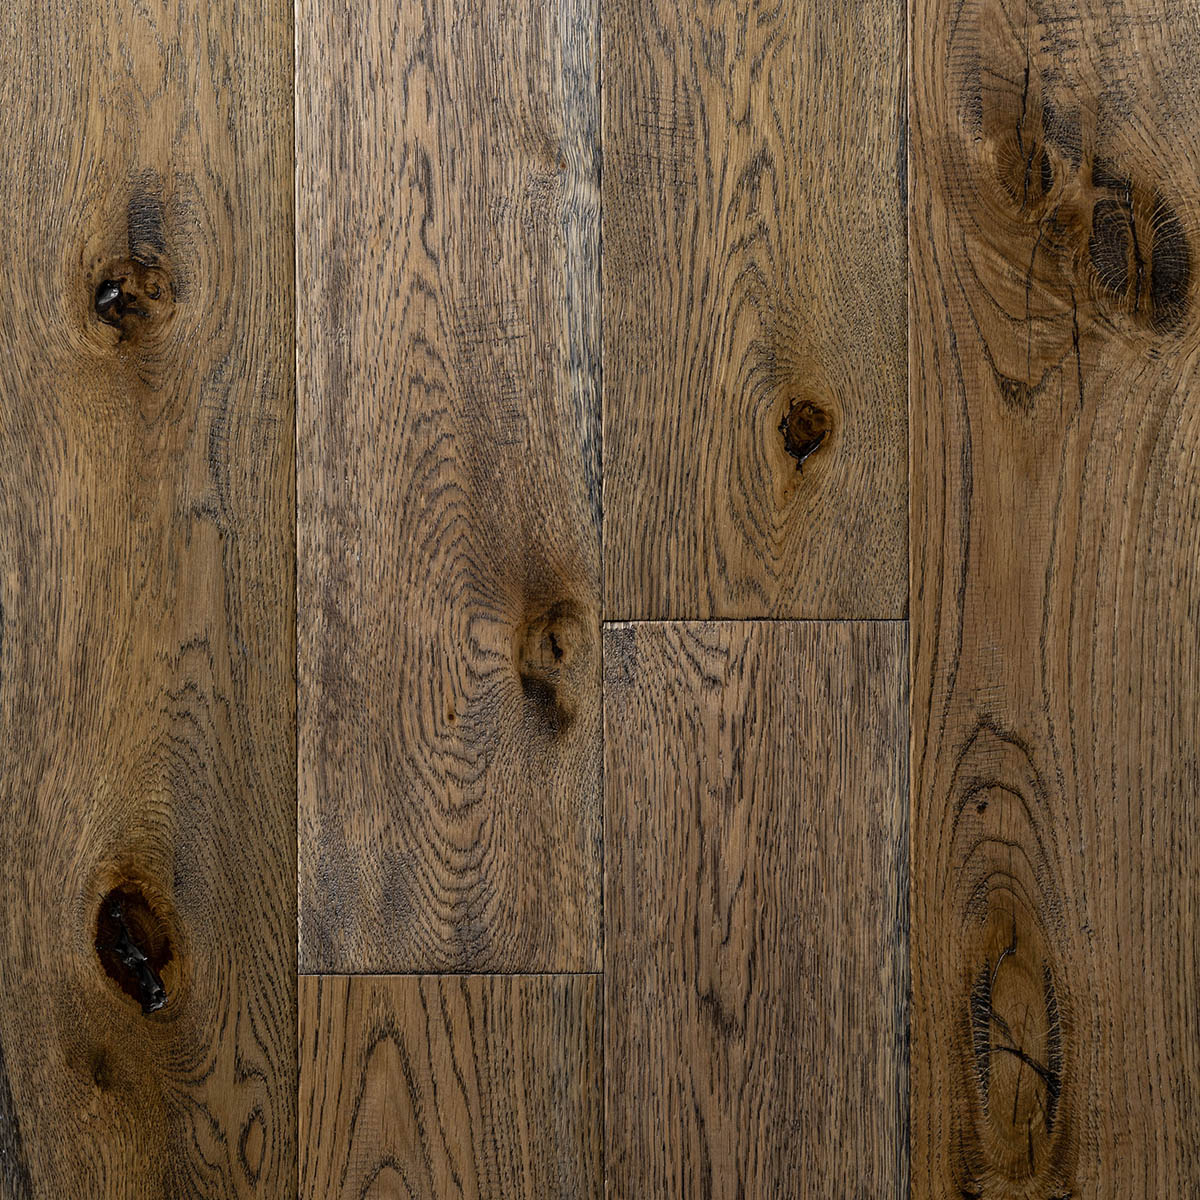 Howden - Rustic Grade Hand Distressed Engineered Floor